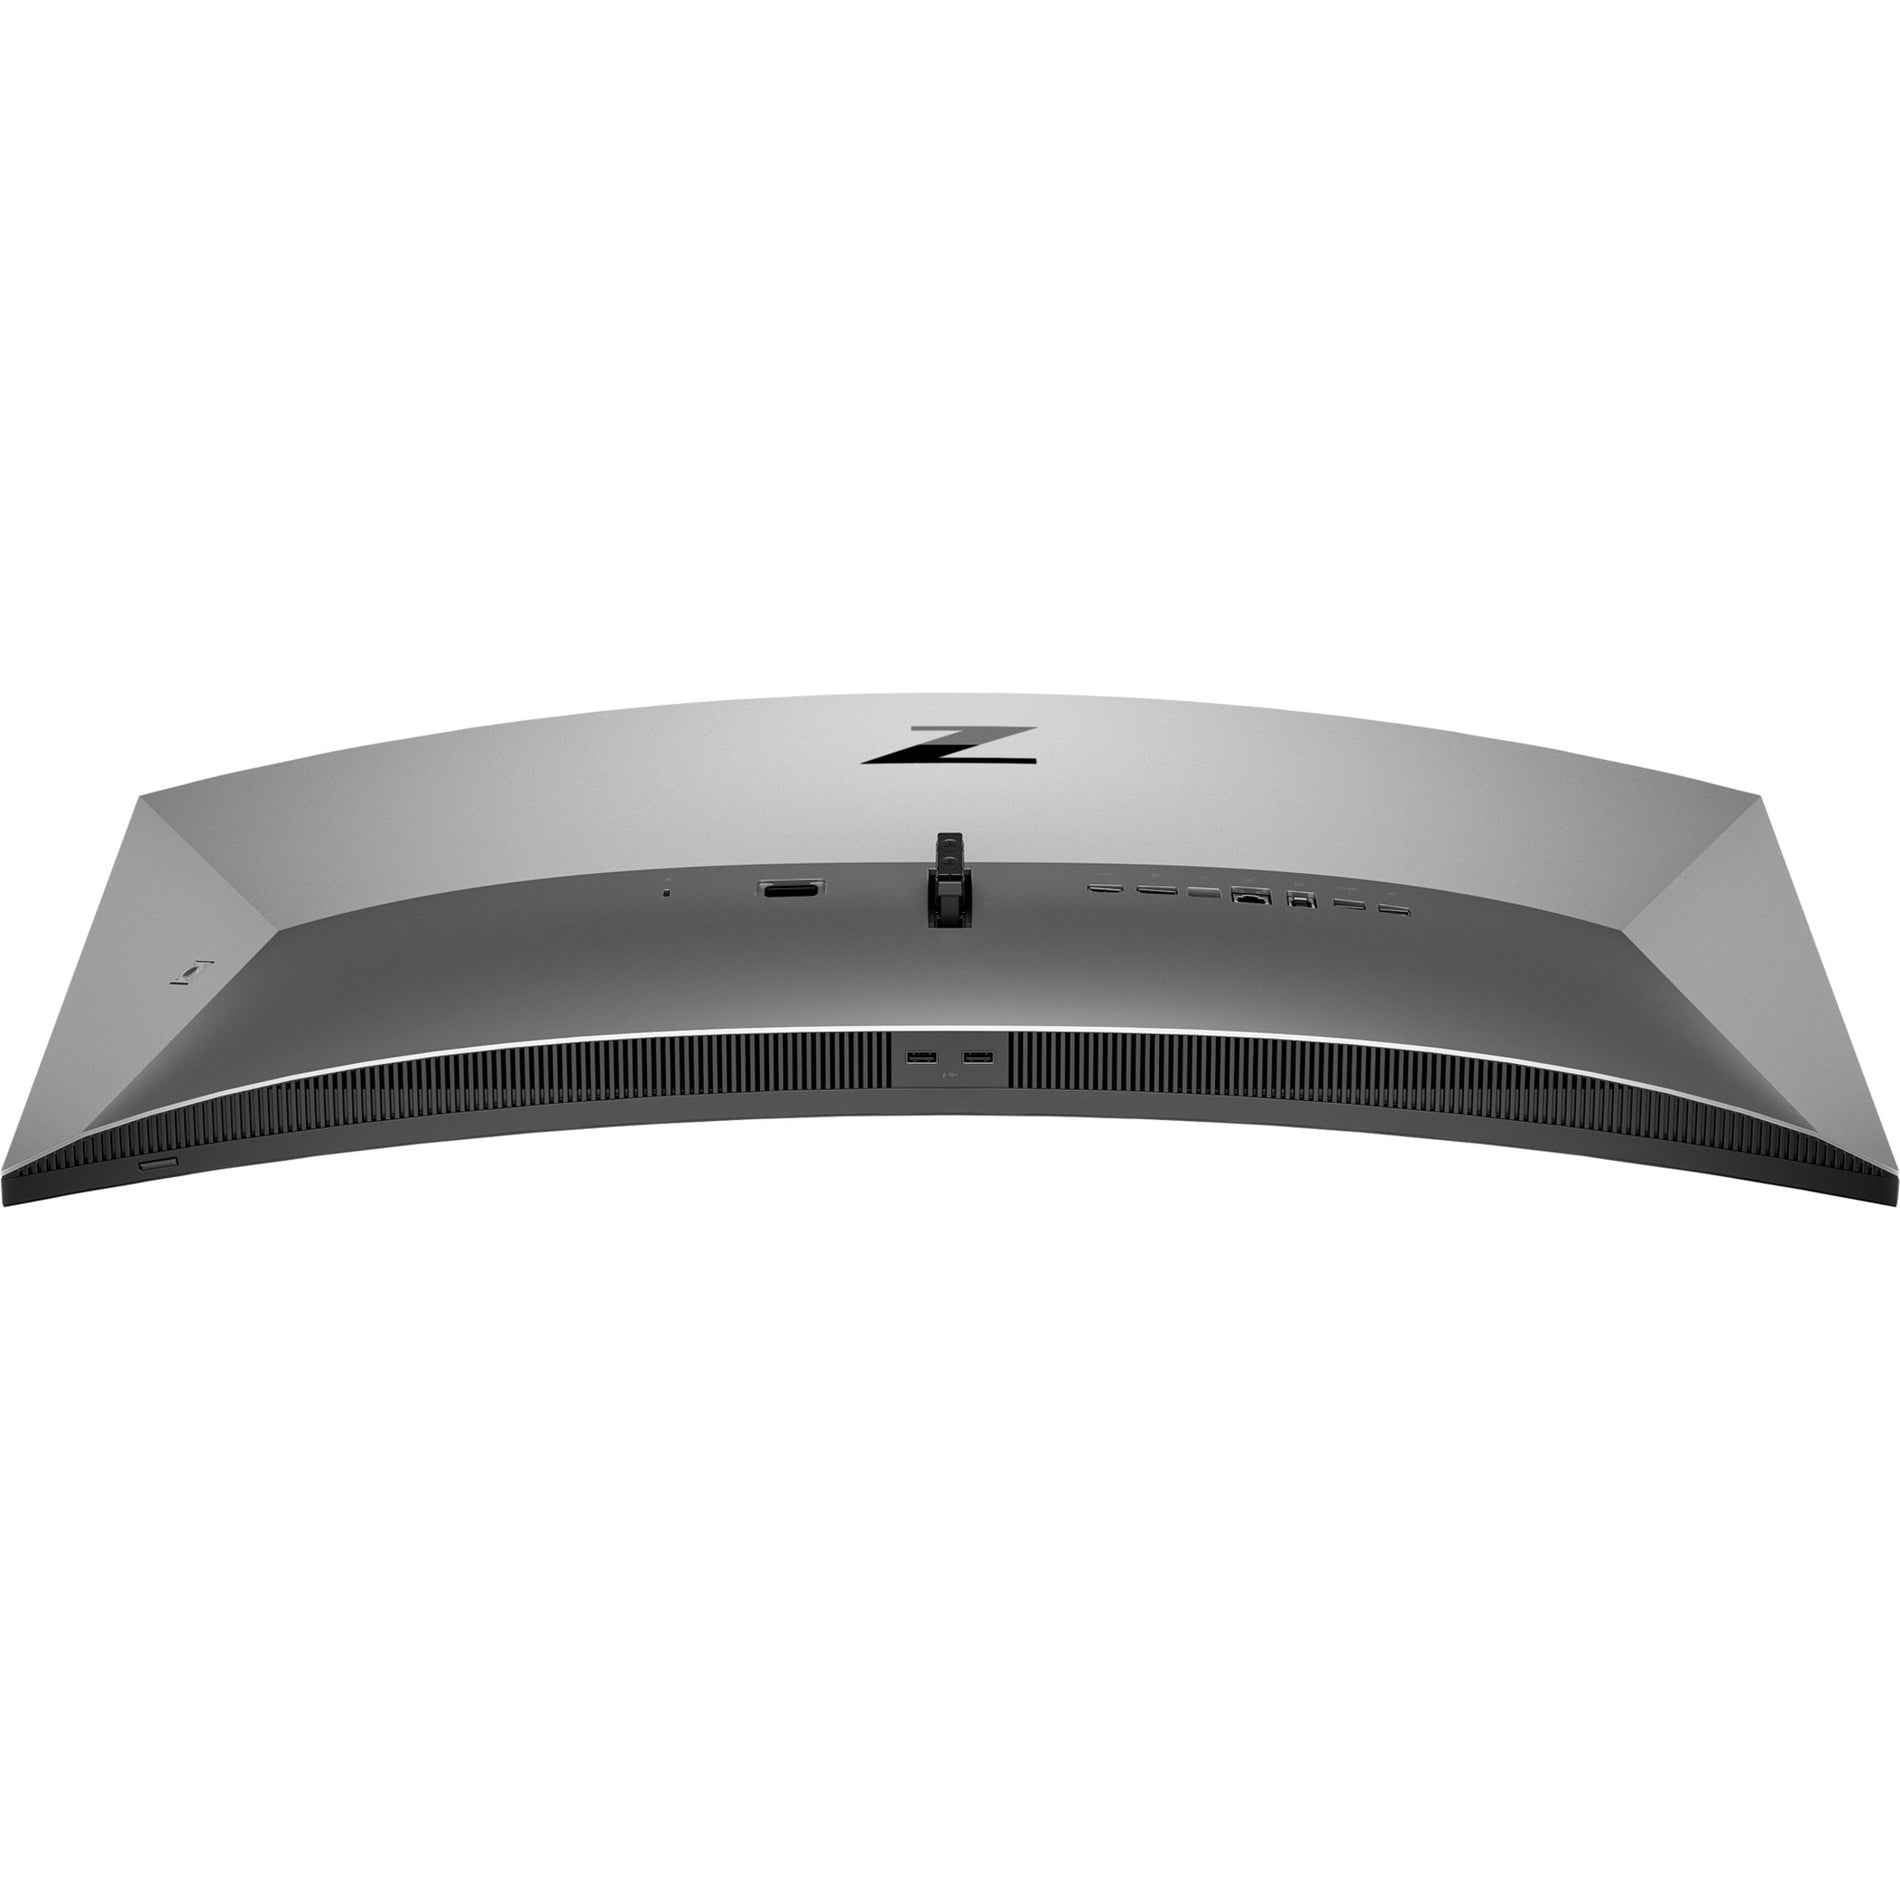 HP Z34c G3 WQHD Curved Display, 34", 3440 x 1440, 99% sRGB, USB-C, HDMI, Webcam [Discontinued]